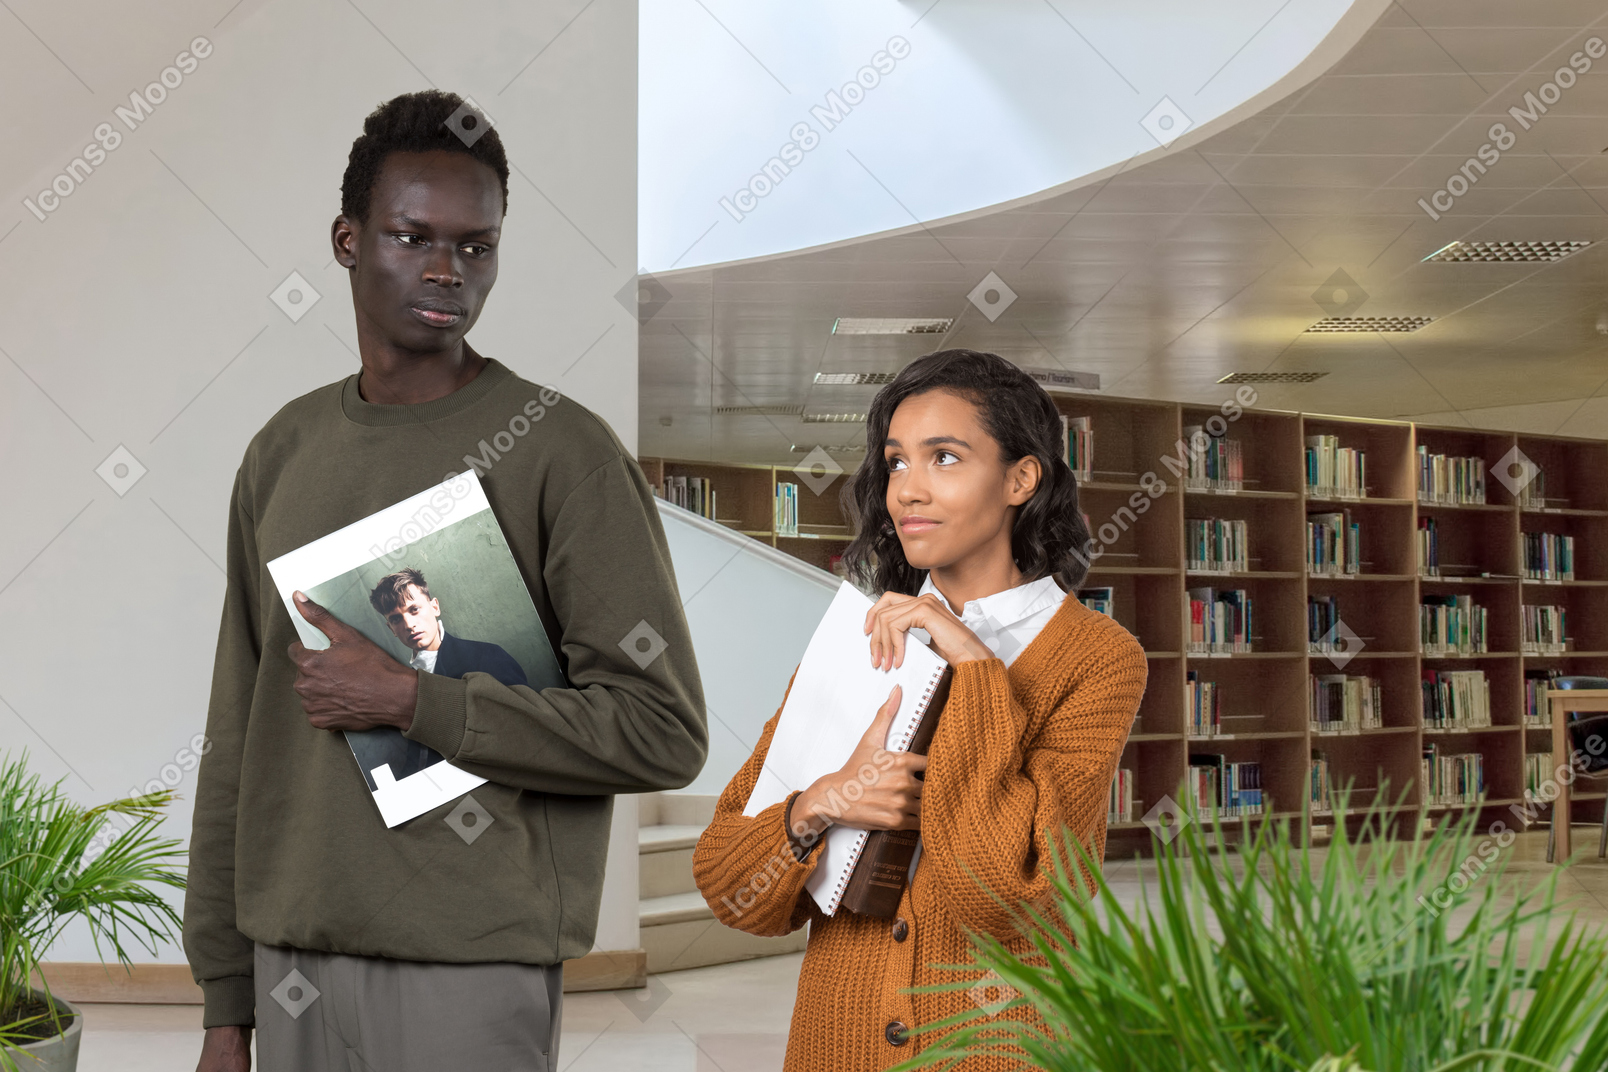 Una donna nera vestita in modo modesto con i libri in mano, guarda amorevolmente l'uomo nero serio in biblioteca, che non nota il suo aspetto